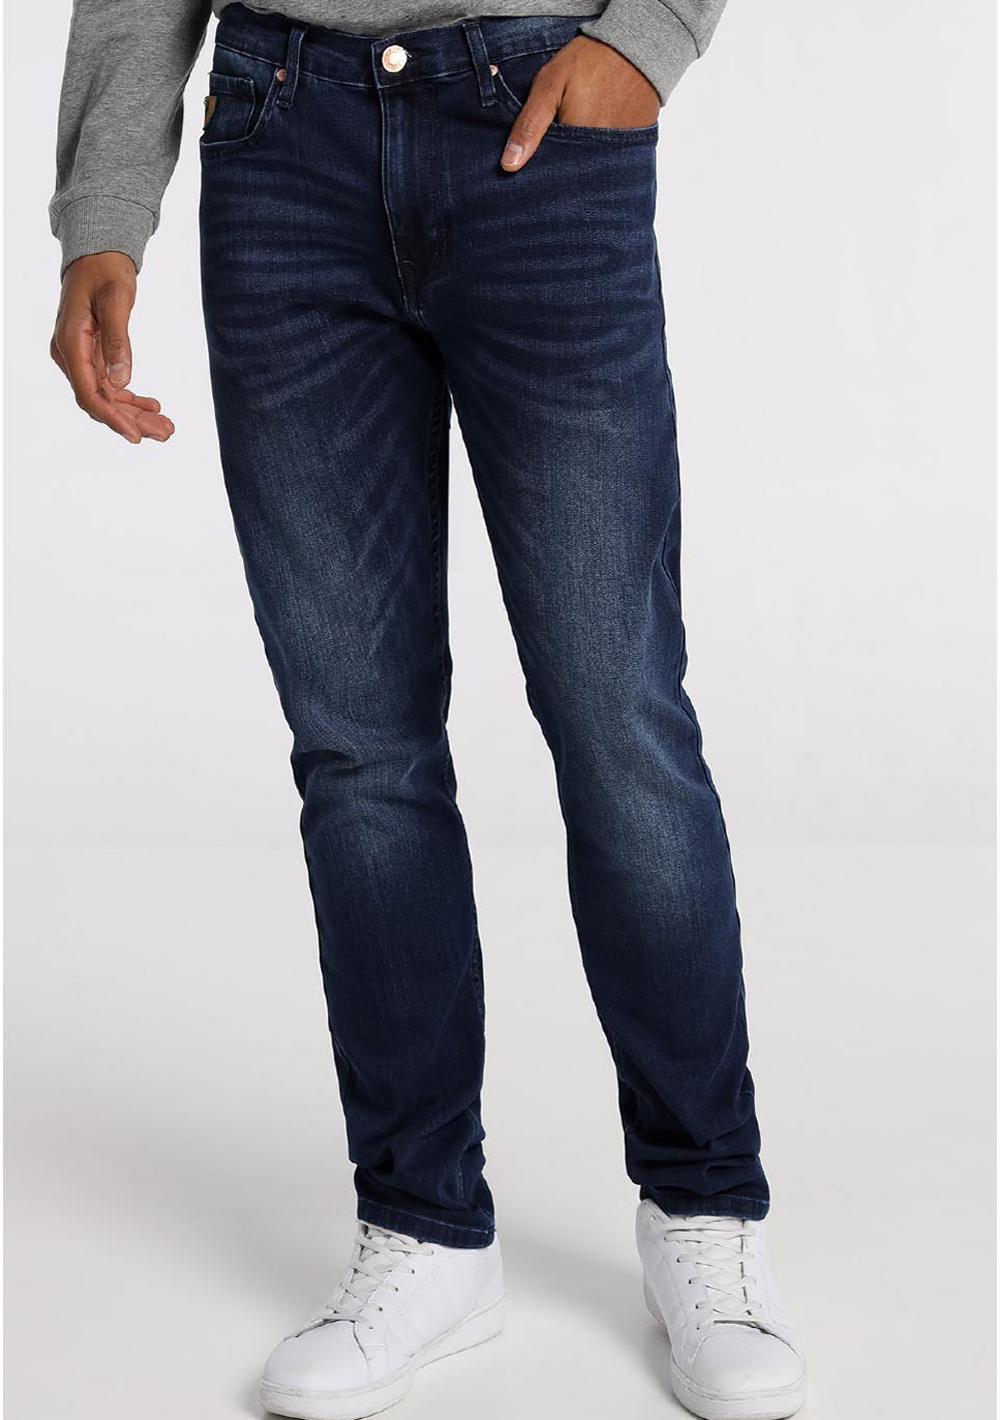 Lois pantalones vaqueros de hombre Robin comfort slim 10191/976 azul oscuro